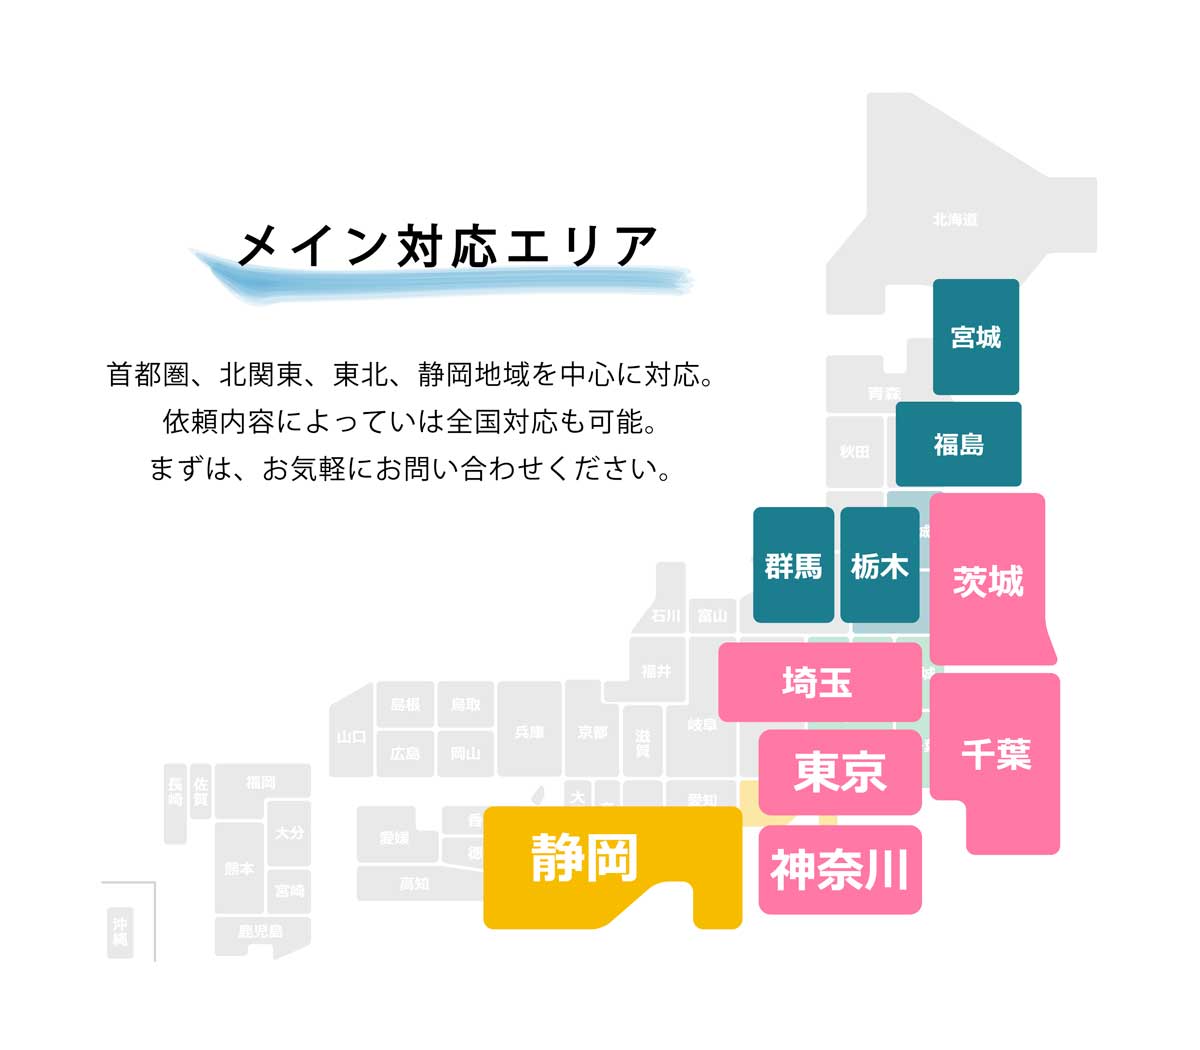 清掃エリアは東京都、埼玉県、神奈川県、千葉県、茨城県、宮城県、秋田県、静岡県、静岡市を中心に対応。依頼内容によって全国対応も可能。まずは、お気軽にお問い合わせください。